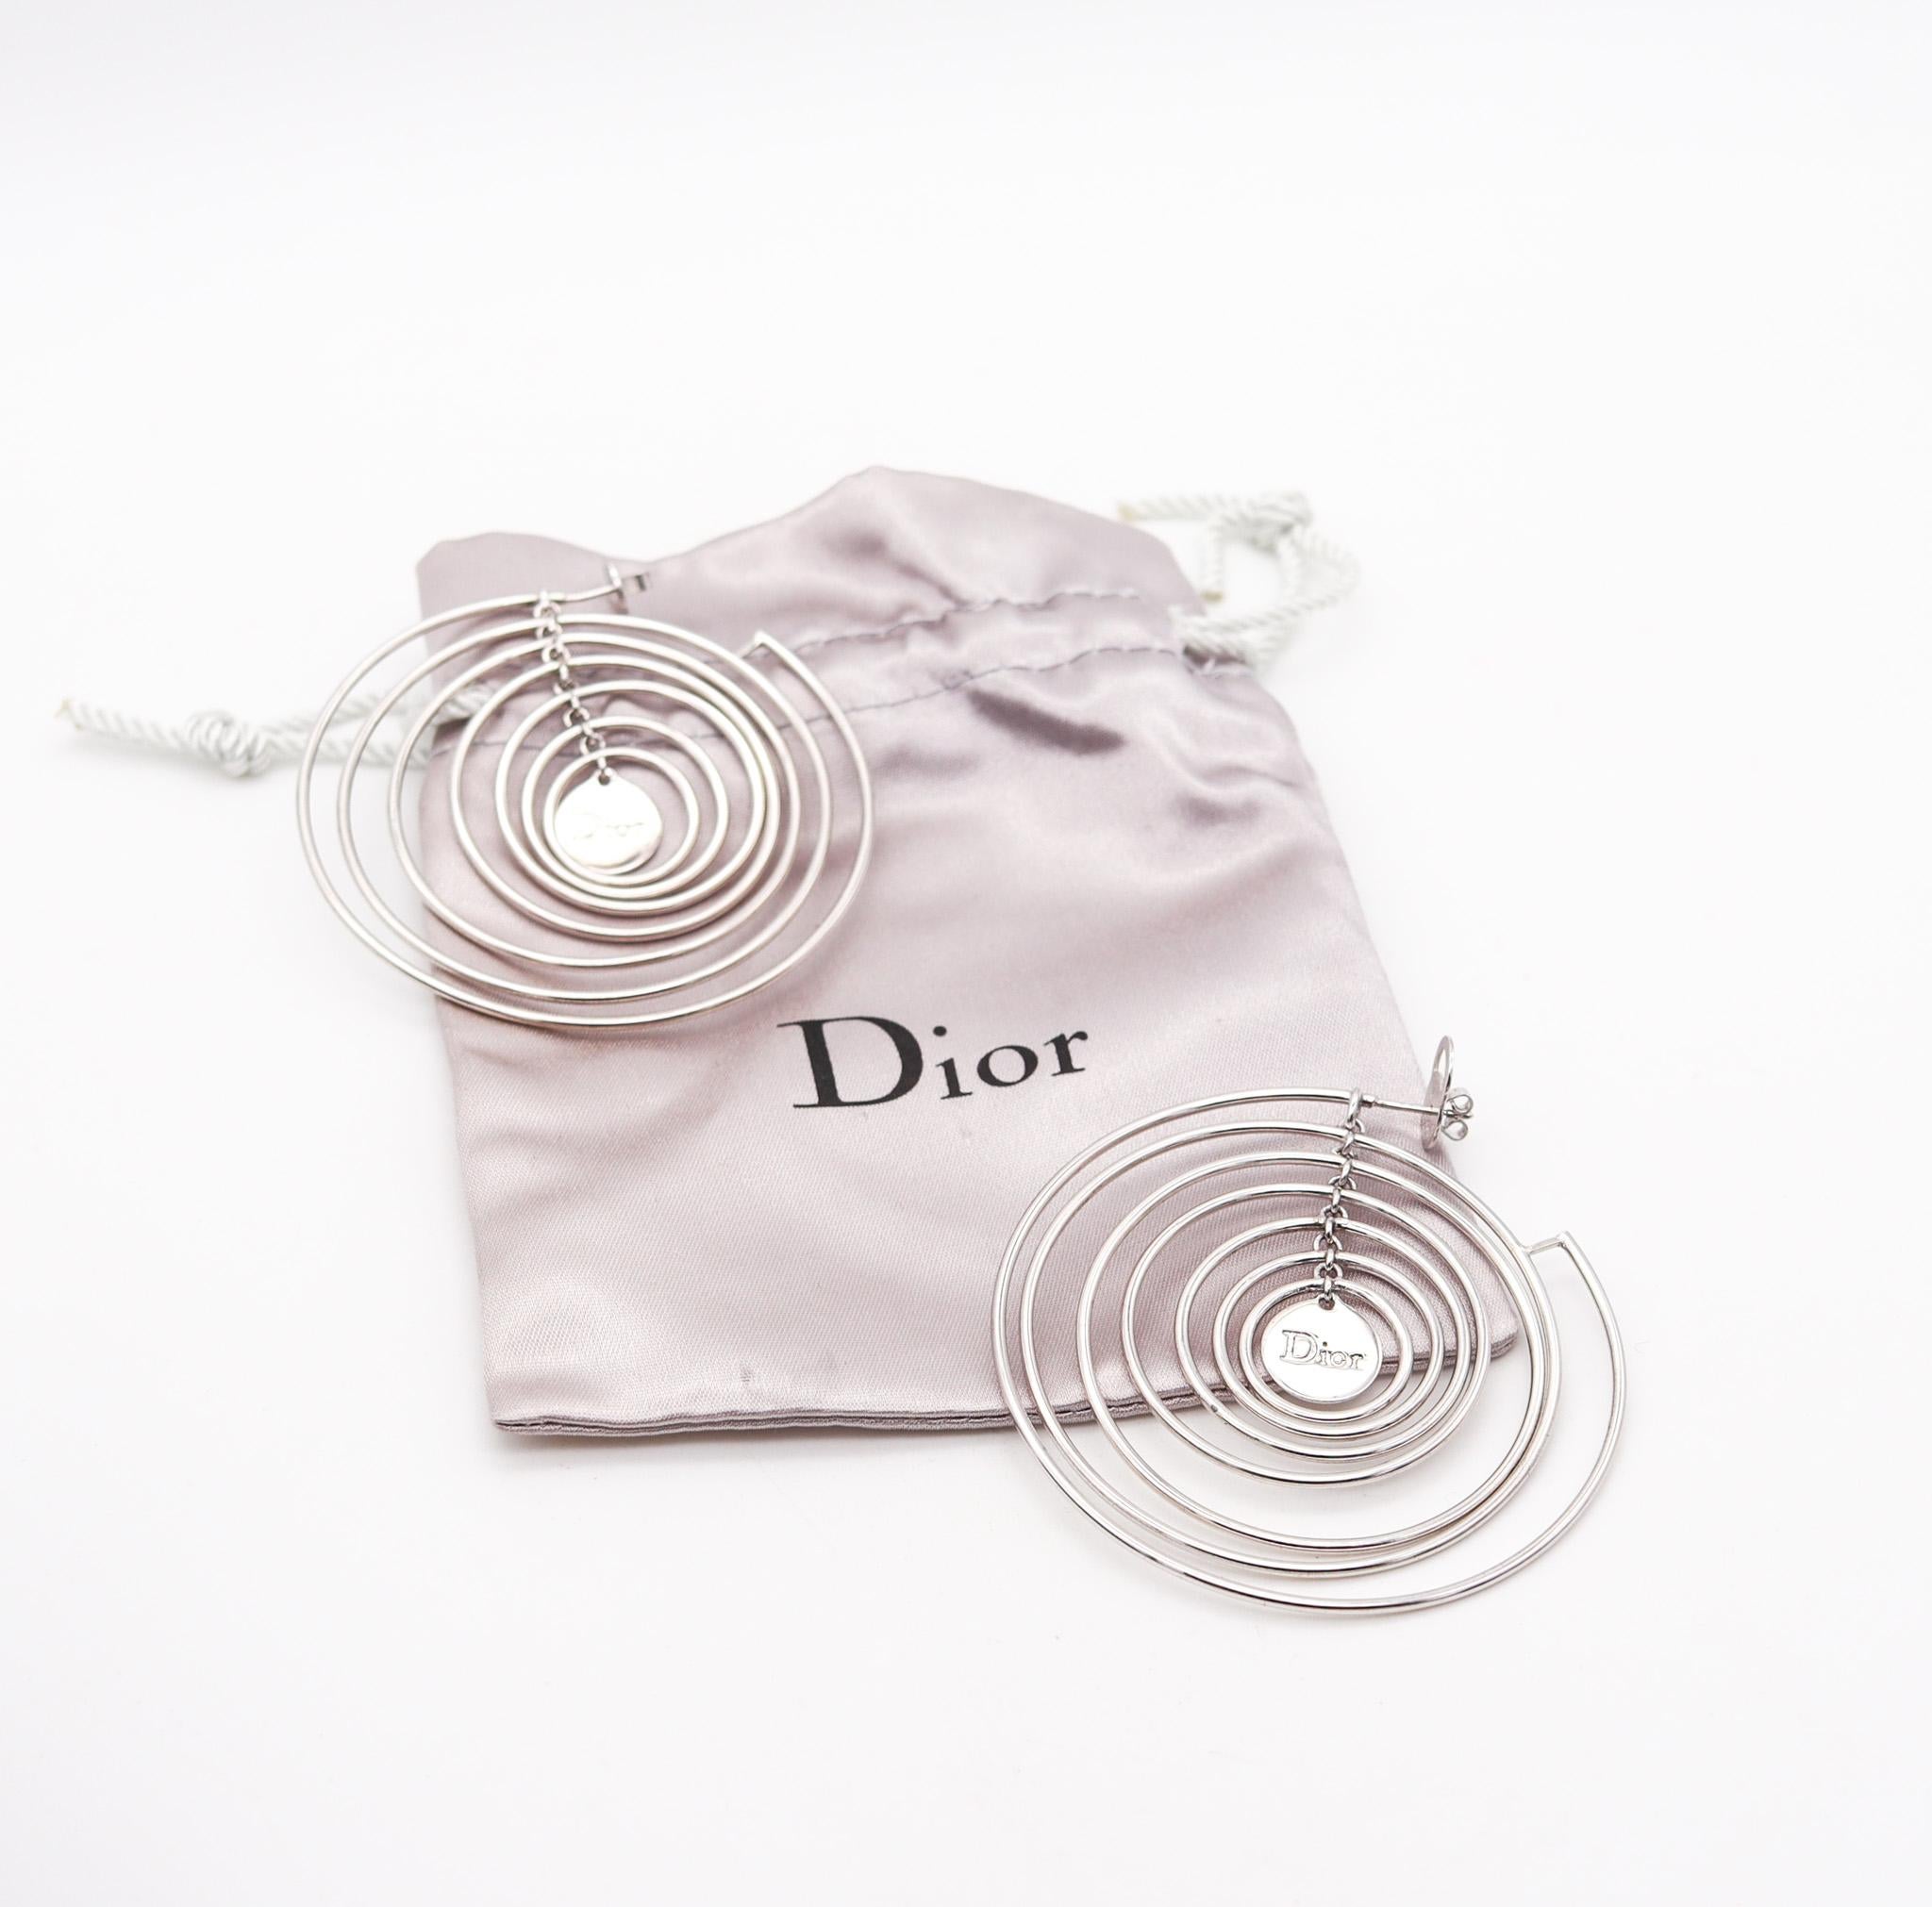 kinetische, skulpturale Kreis-Ohrringe von Christian Dior.

Fabelhafte kinetische Ohrringe, die in Paris Frankreich im Atelier von Christian Dior entworfen wurden. Diese ultramodernen Ohrringe sind sehr künstlerisch und wurden aus massivem